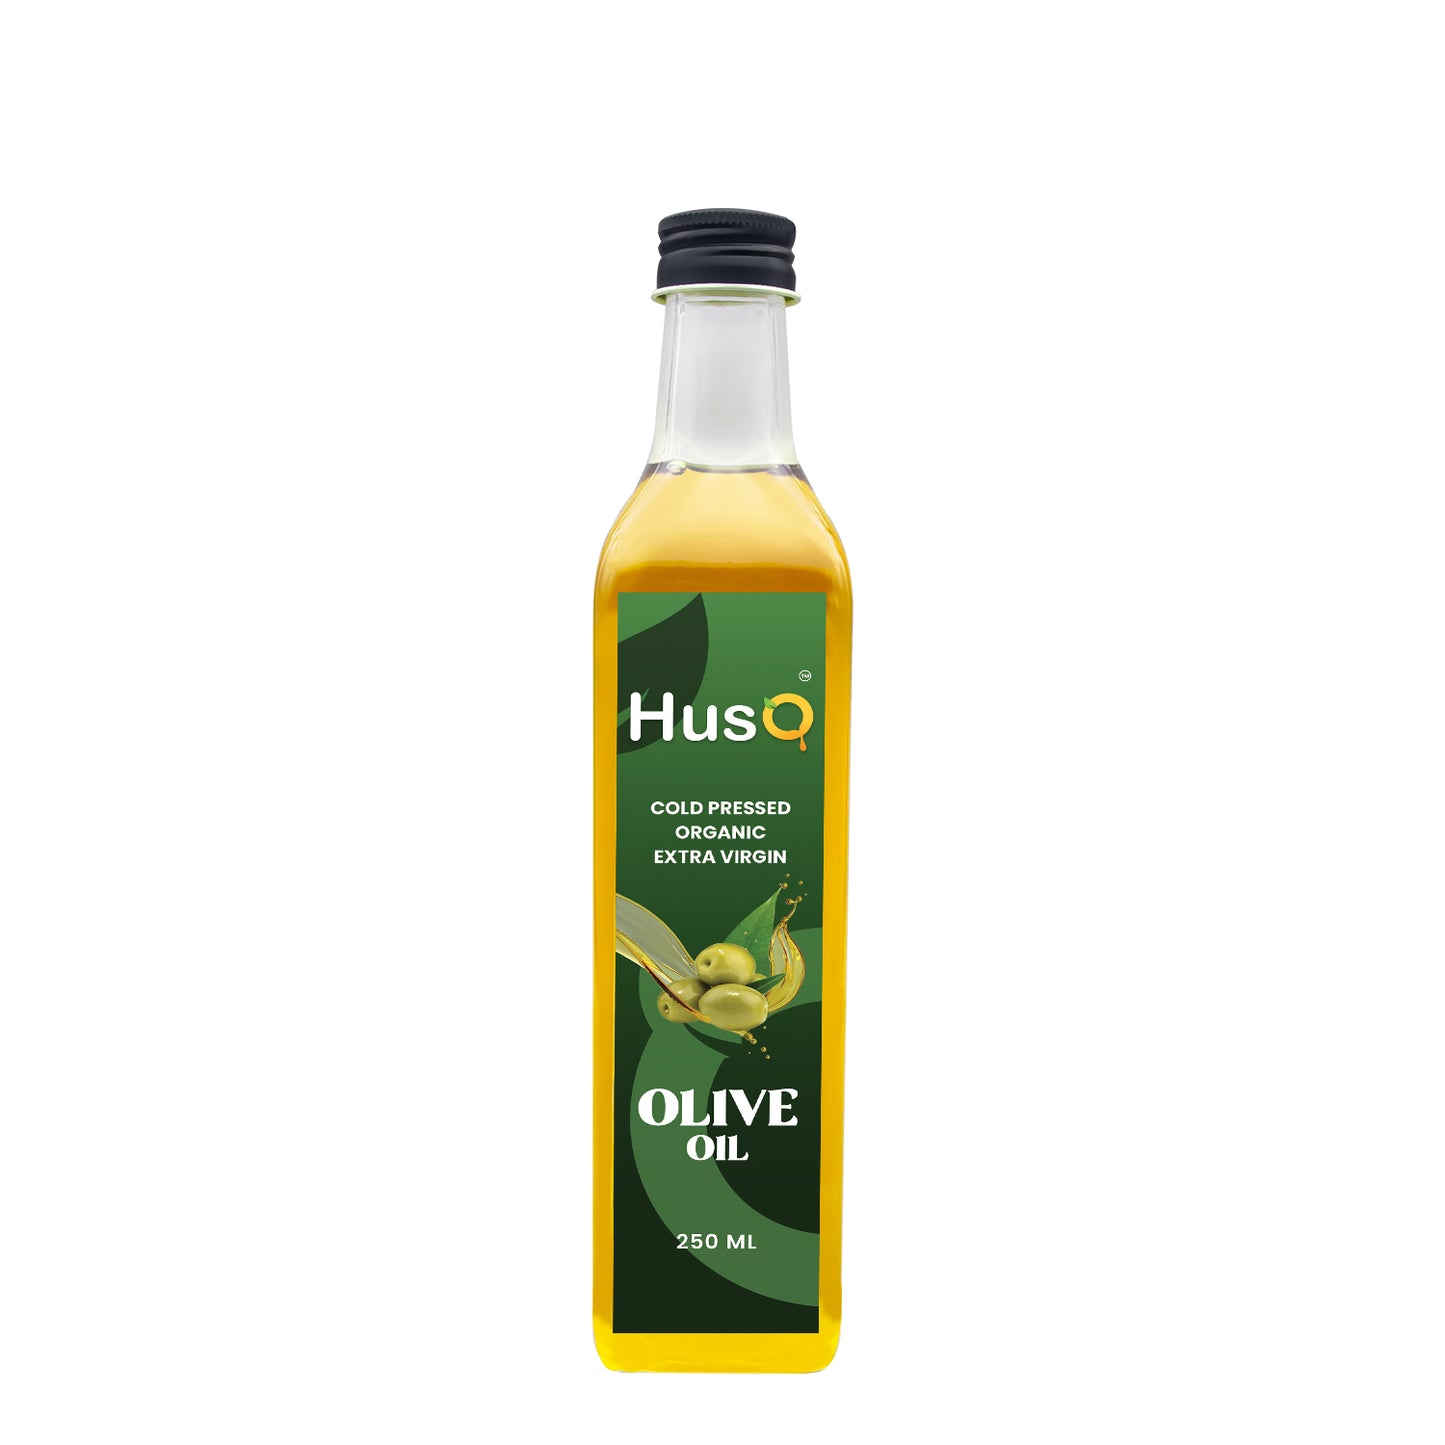 HusQ Olive Oil - 250 ml